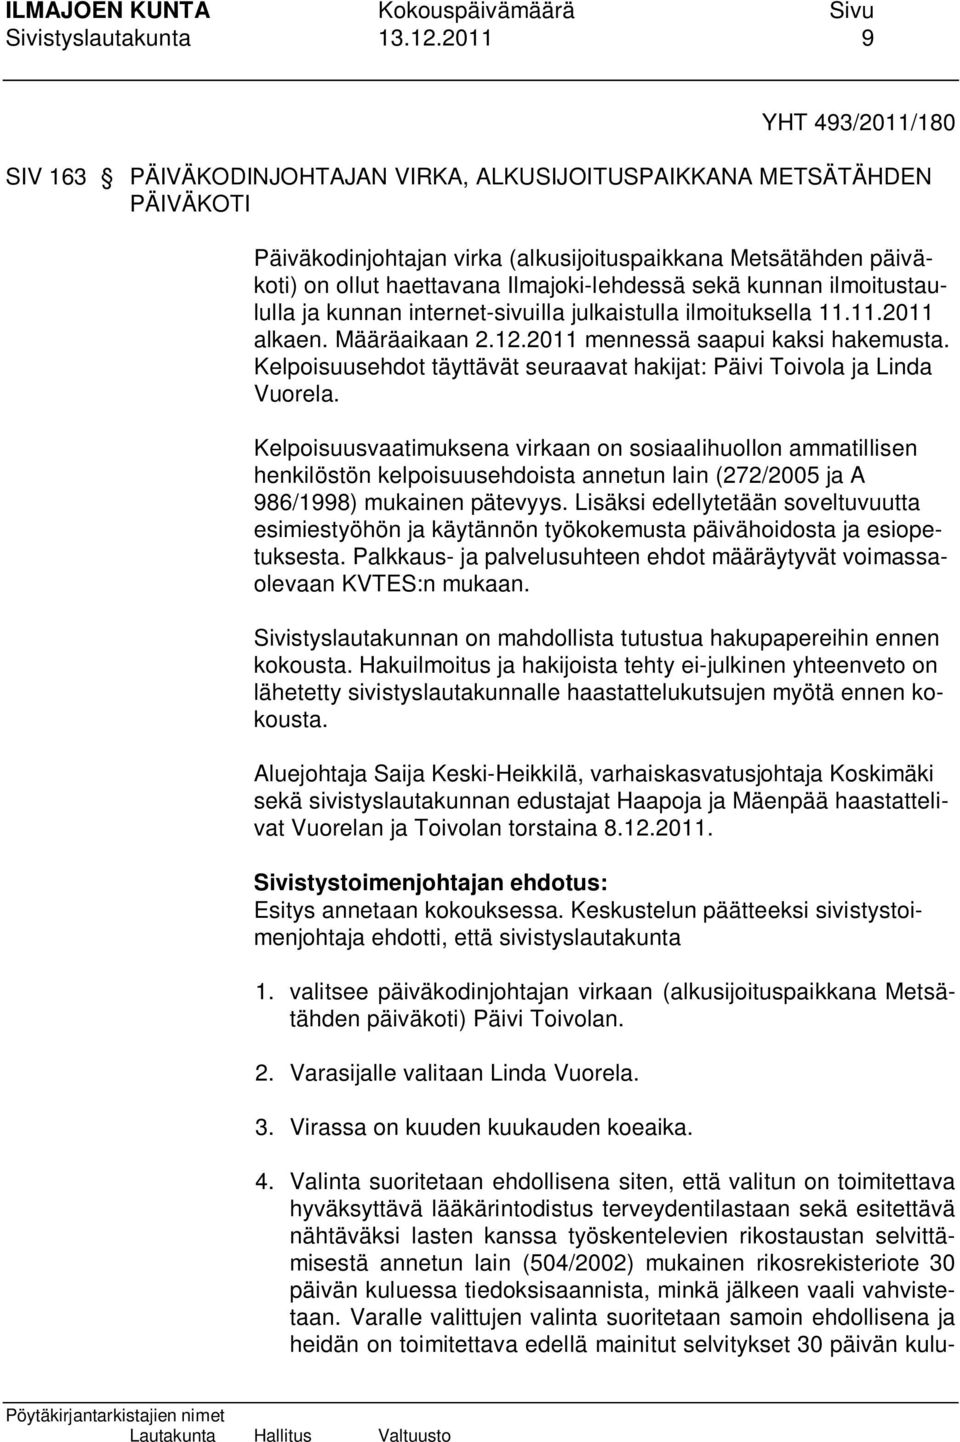 Ilmajoki-lehdessä sekä kunnan ilmoitustaululla ja kunnan internet-sivuilla julkaistulla ilmoituksella 11.11.2011 alkaen. Määräaikaan 2.12.2011 mennessä saapui kaksi hakemusta.